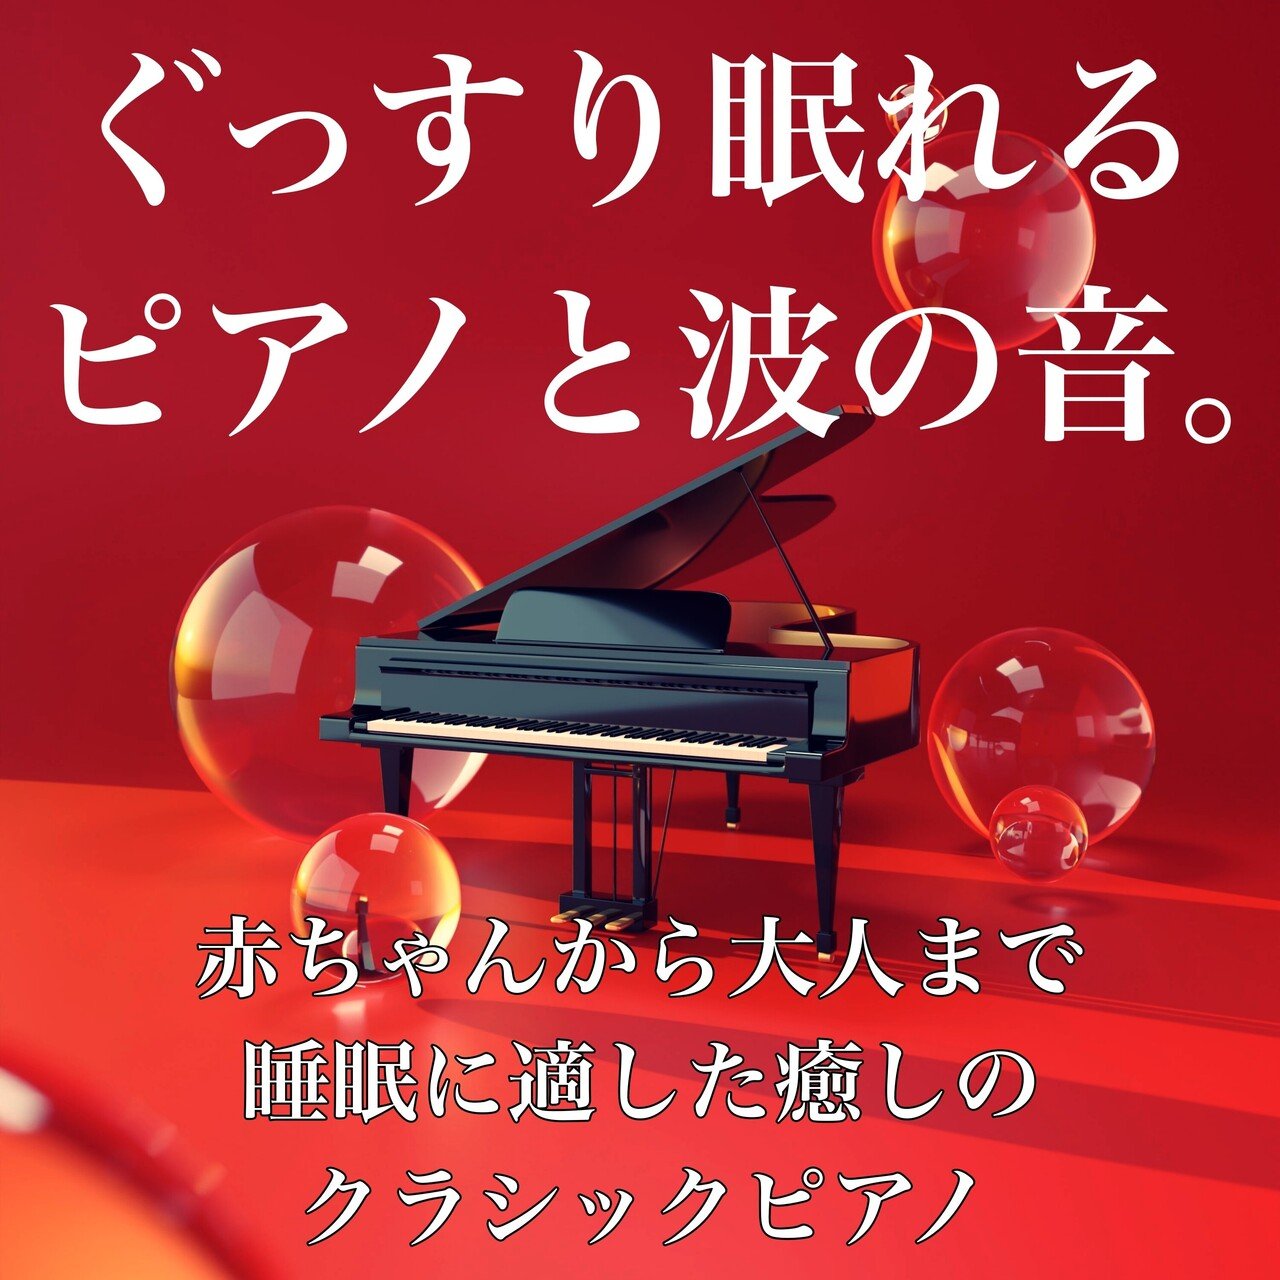 クラシックピアノと波の音jkt_220428